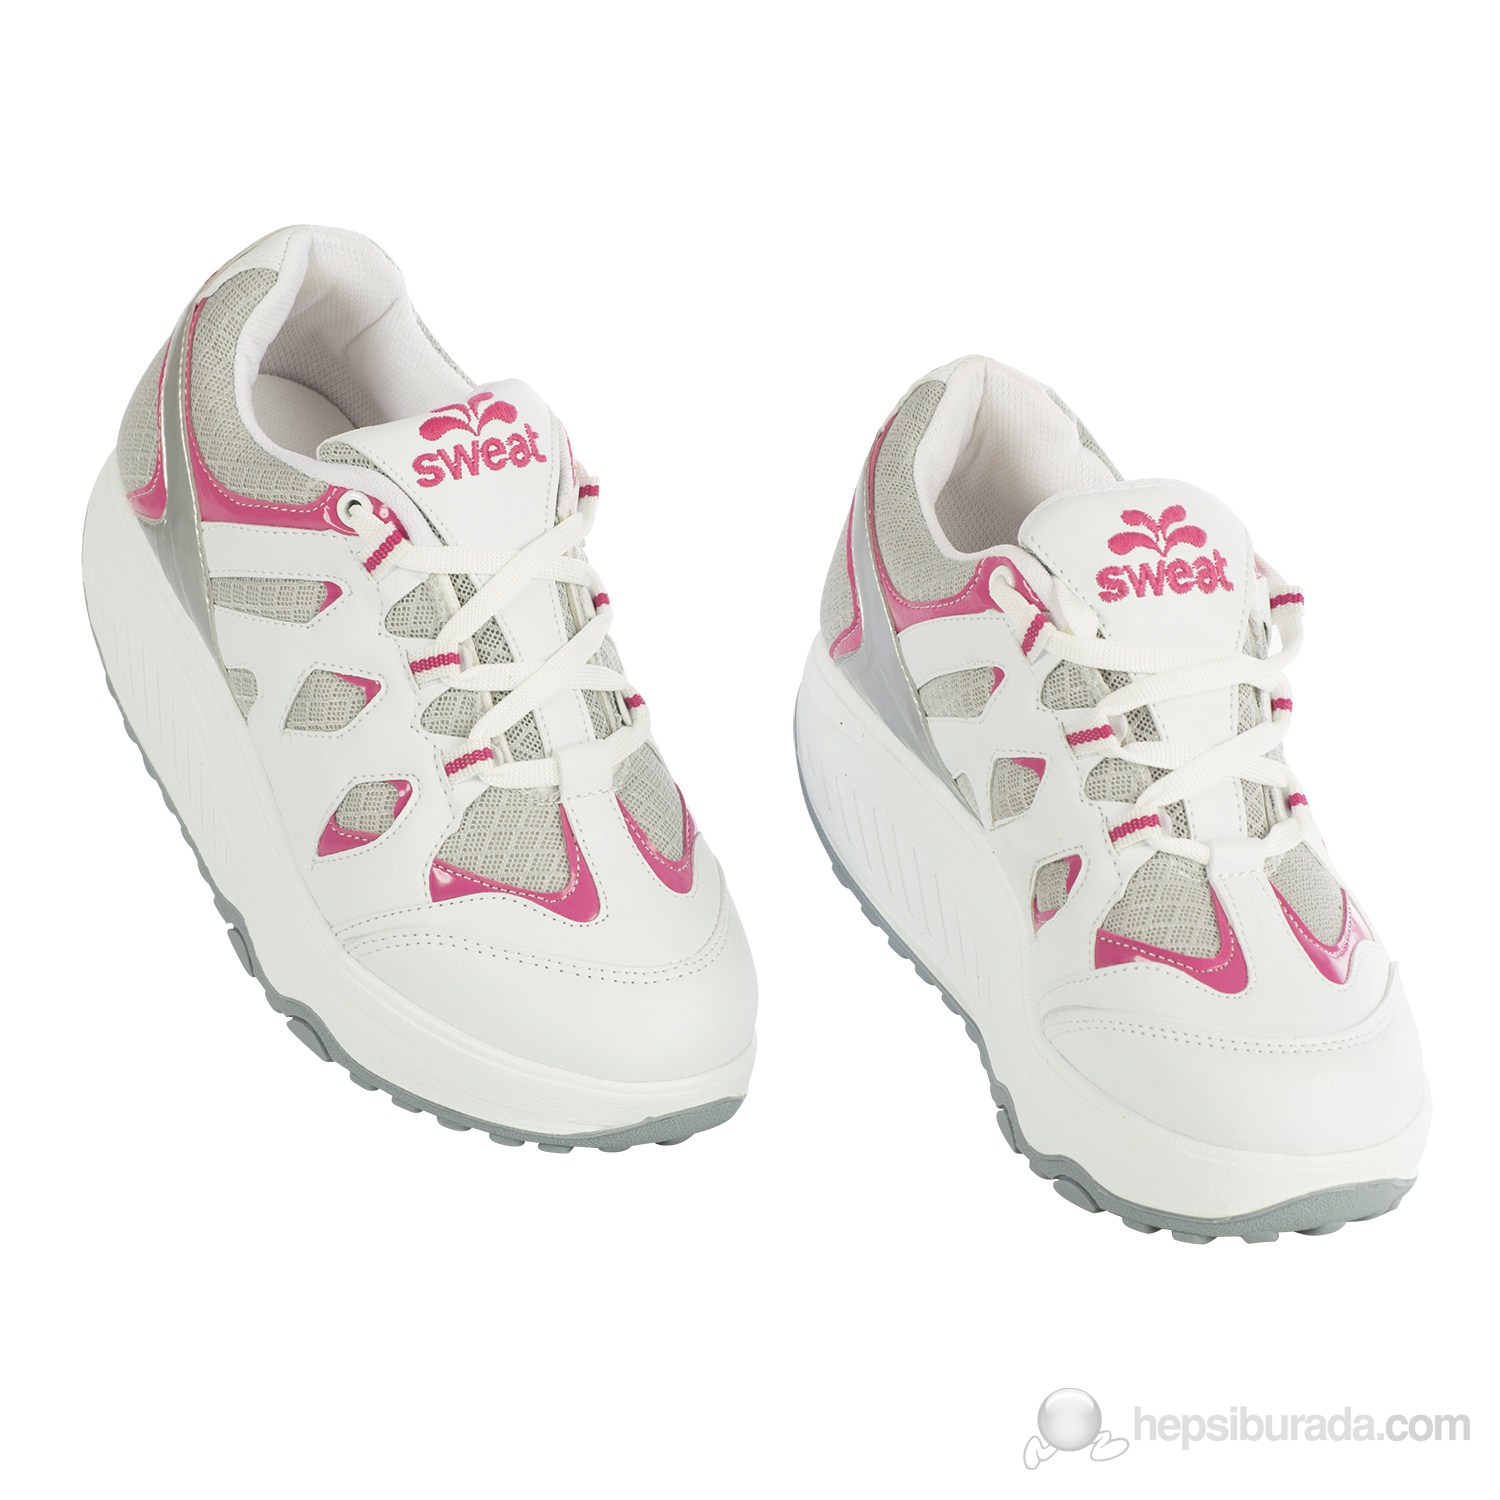 Sweat Steps Kadın Yürüyüş Ayakkabısı